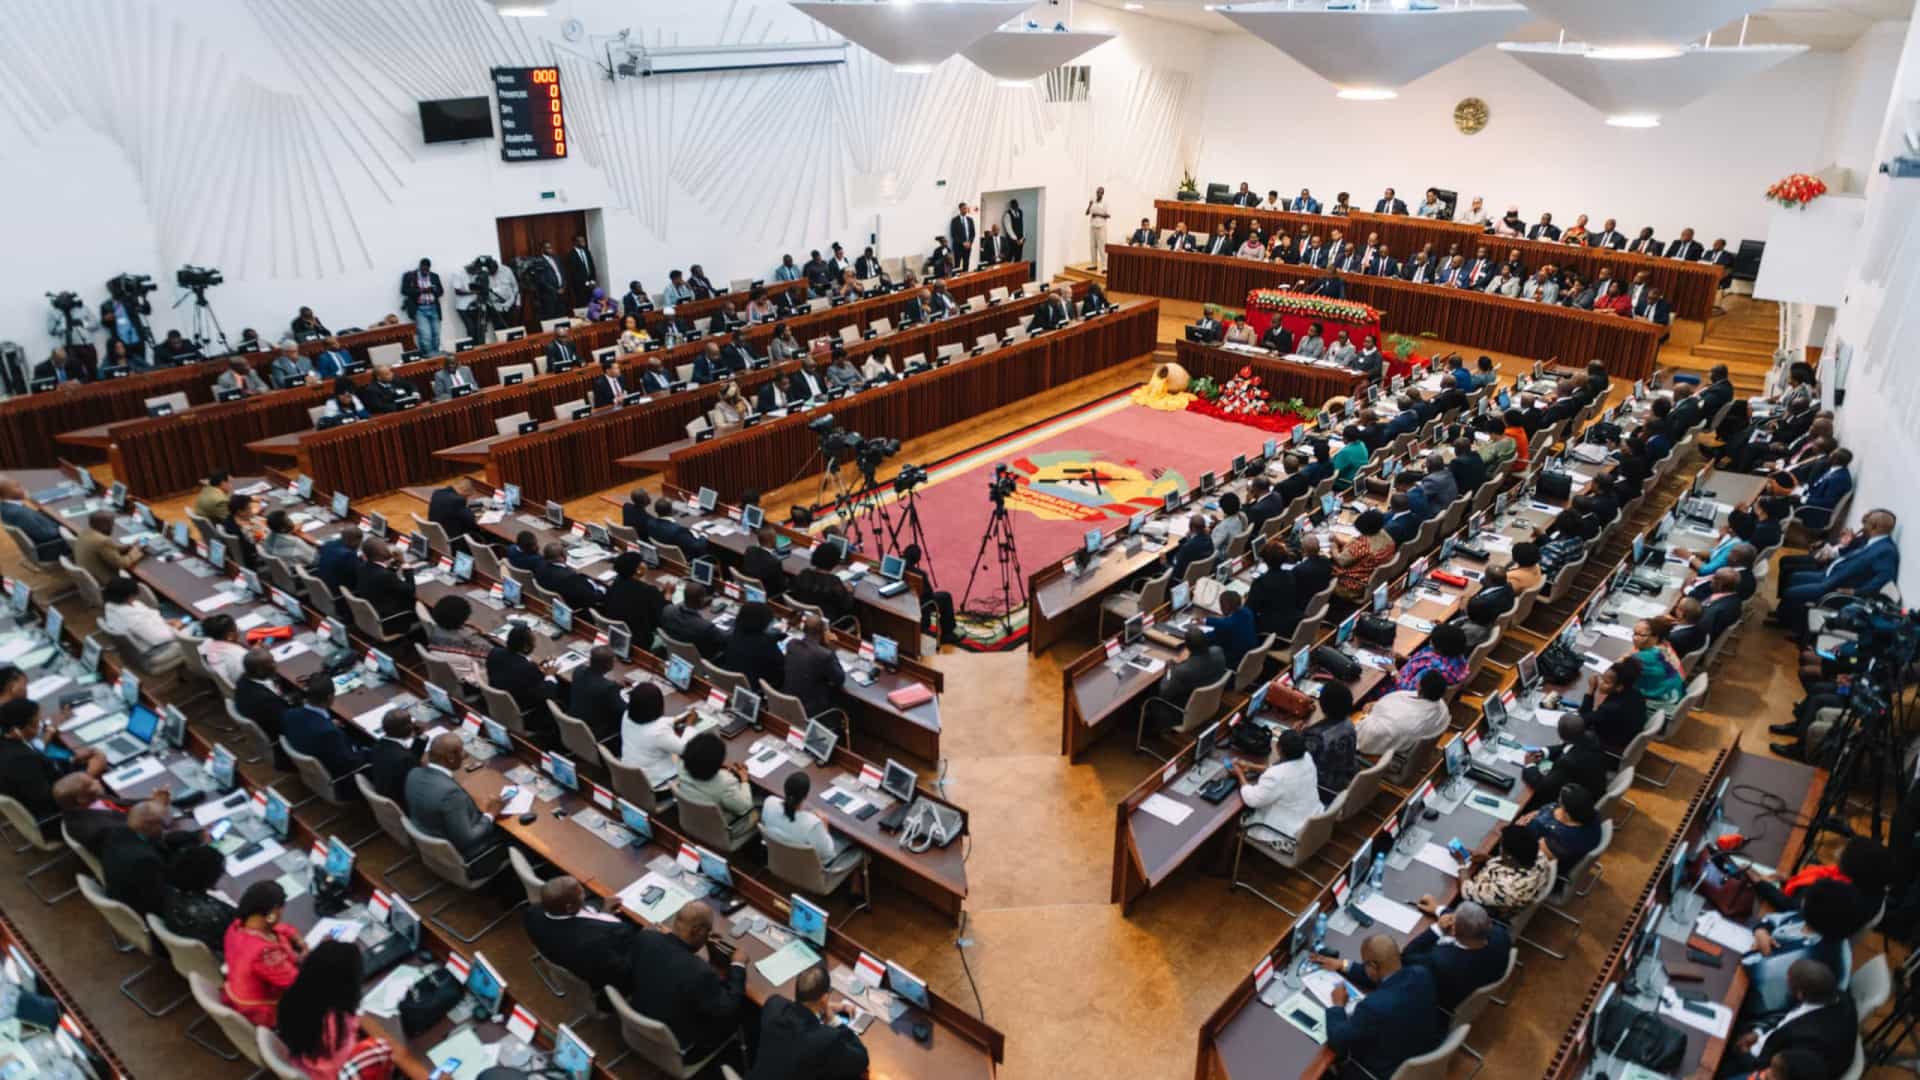 Regalias ficam fora da agenda parlamentar moçambicana após críticas